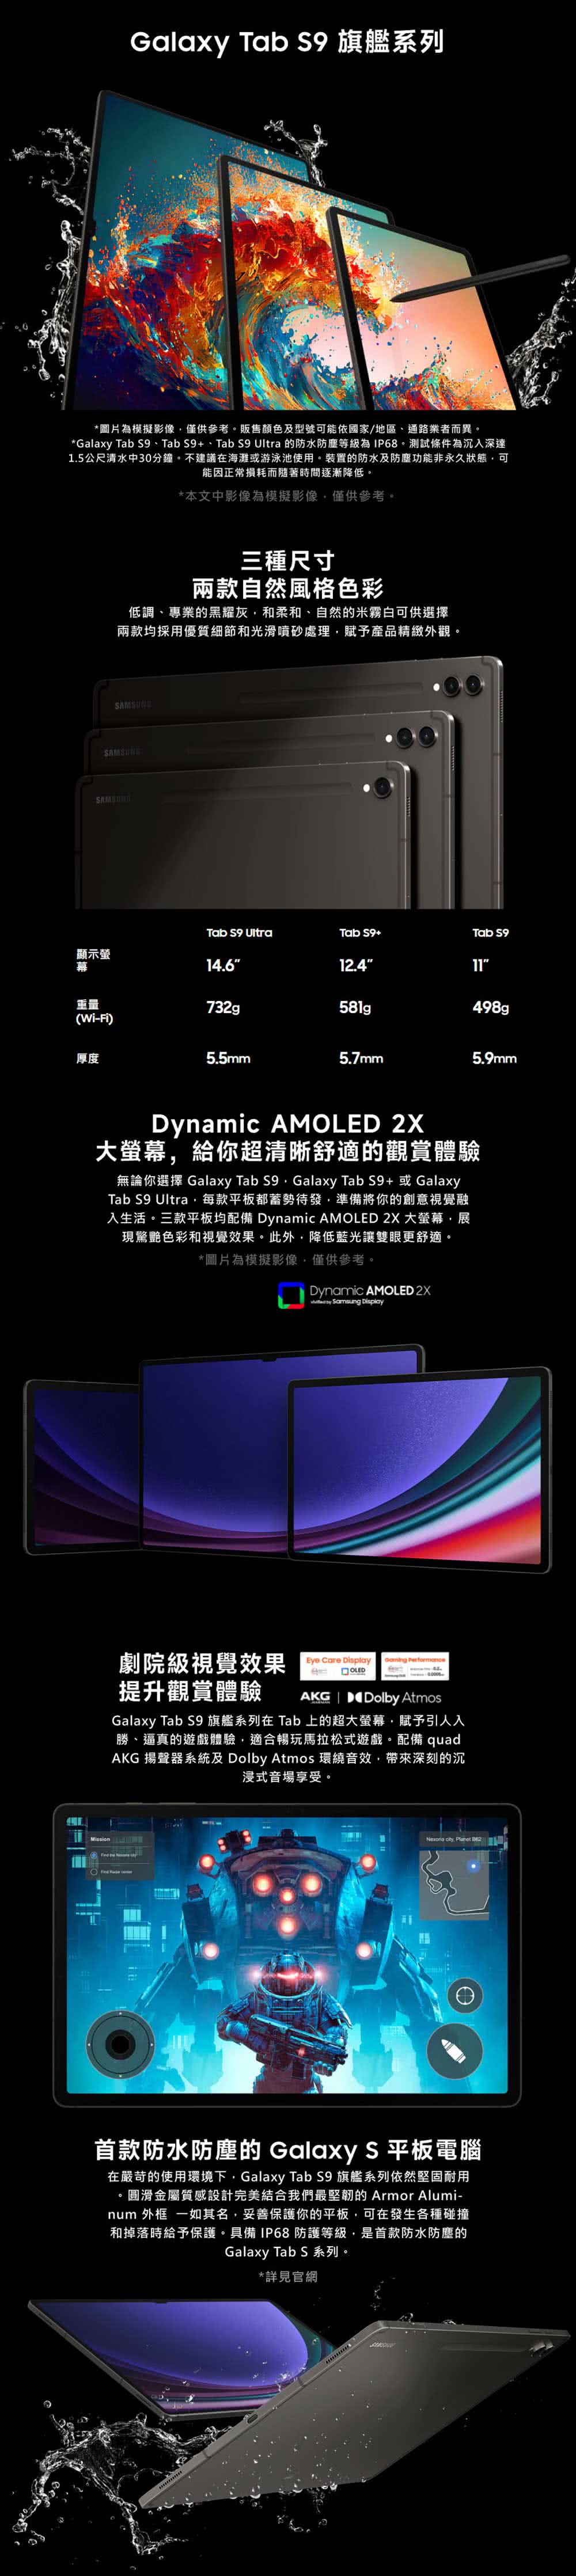 SAMSUNG 三星 Galaxy Tab S9 Ultra